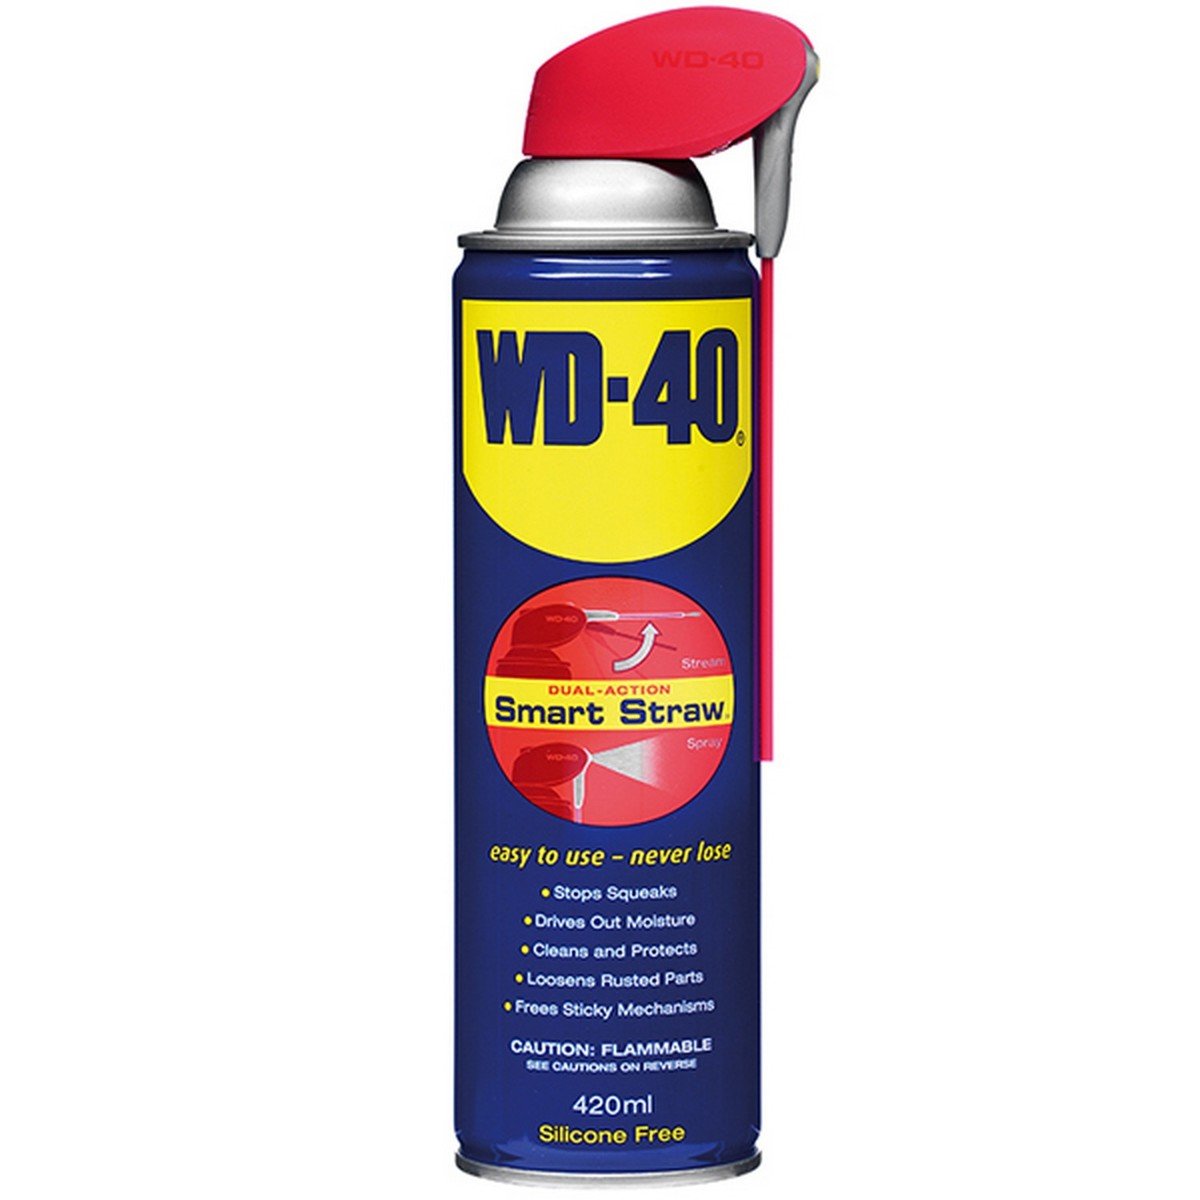 WD-40 Smart Straw Spray 420ml